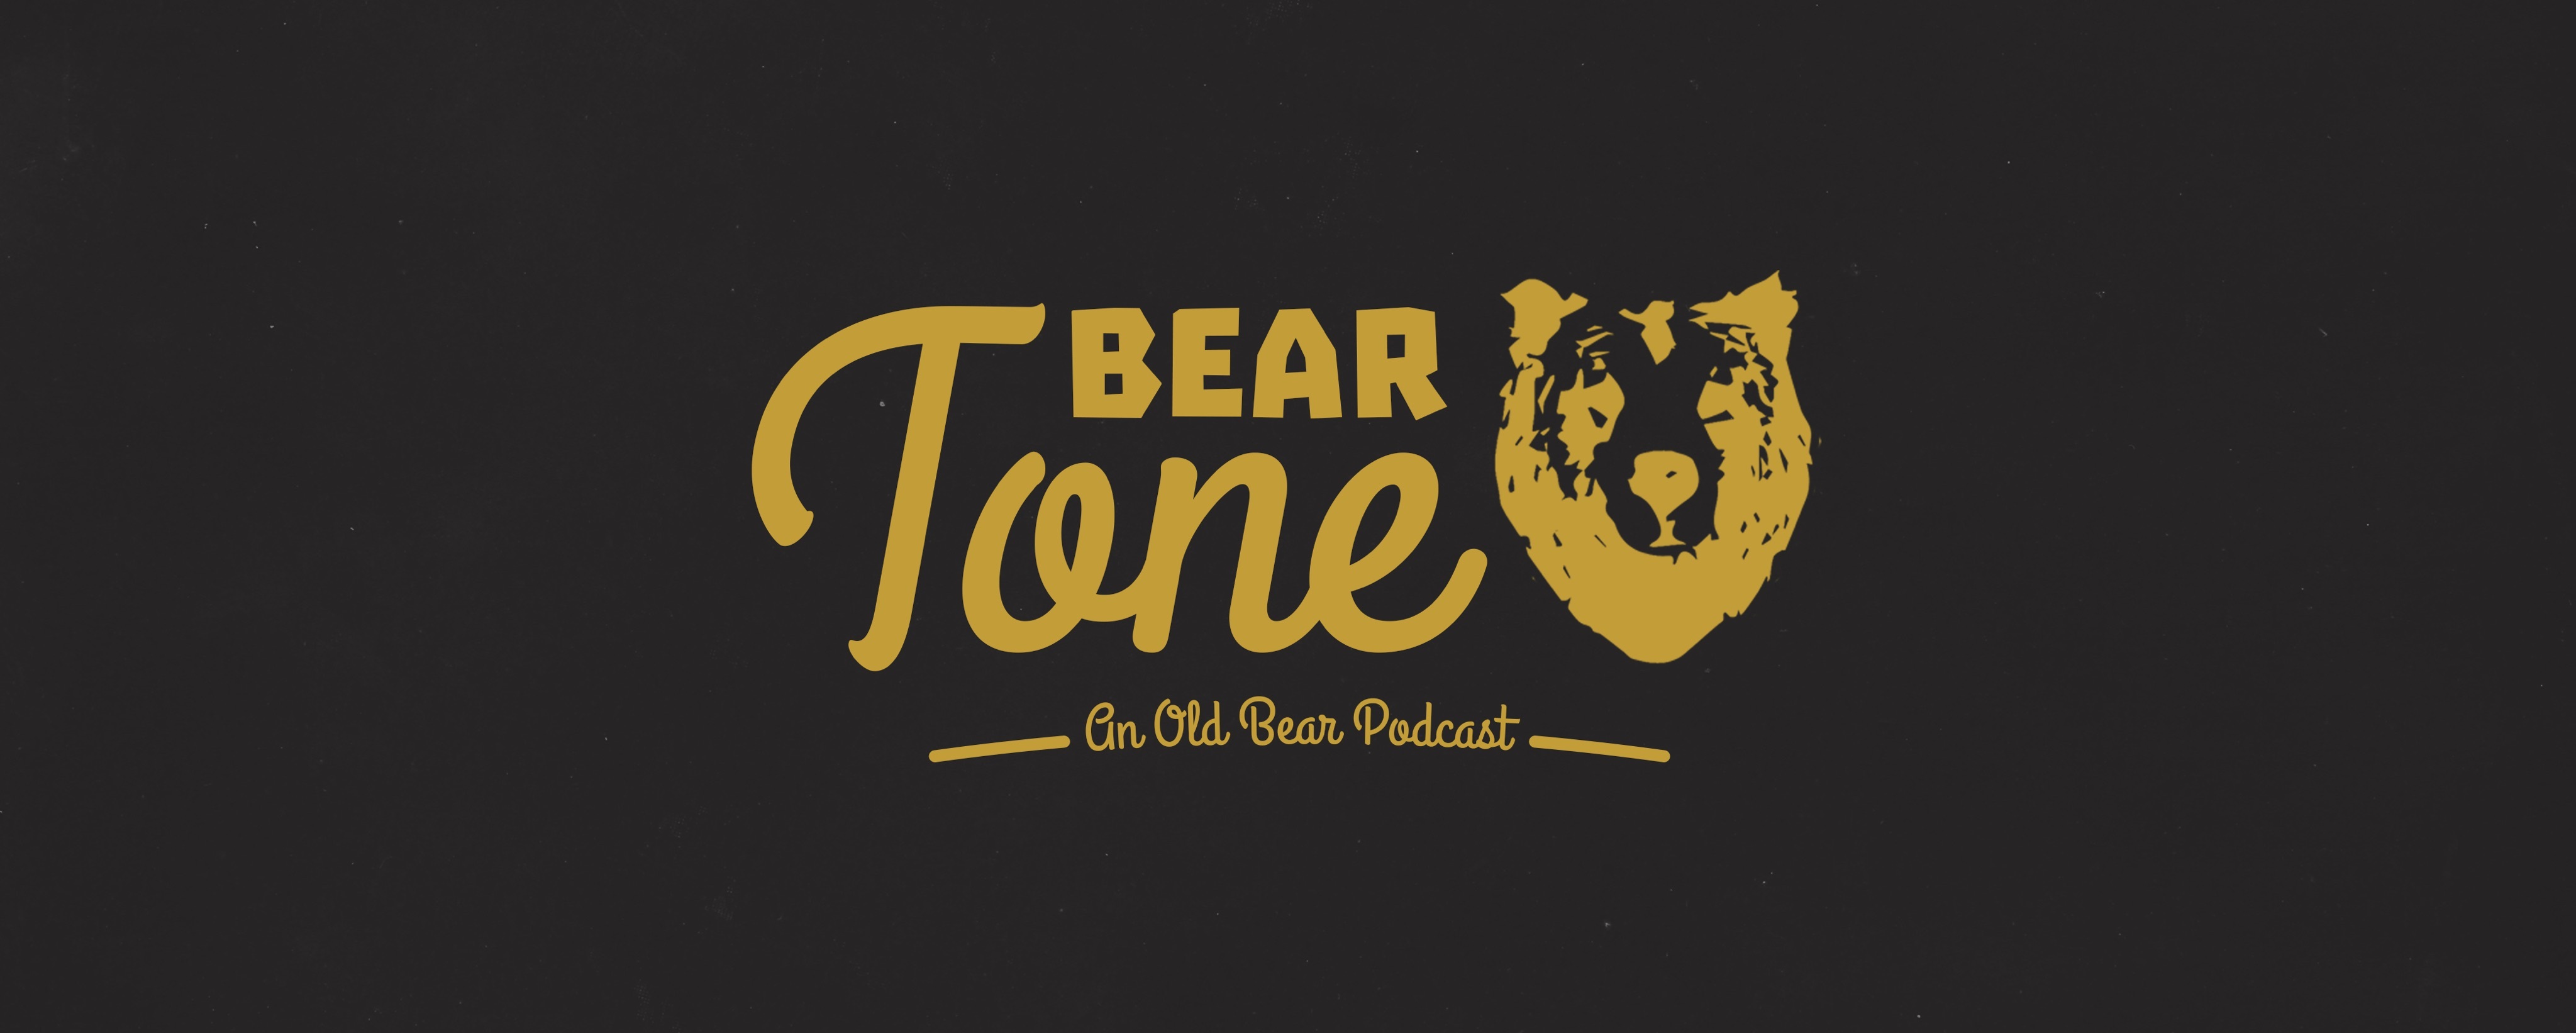 Bear Tone